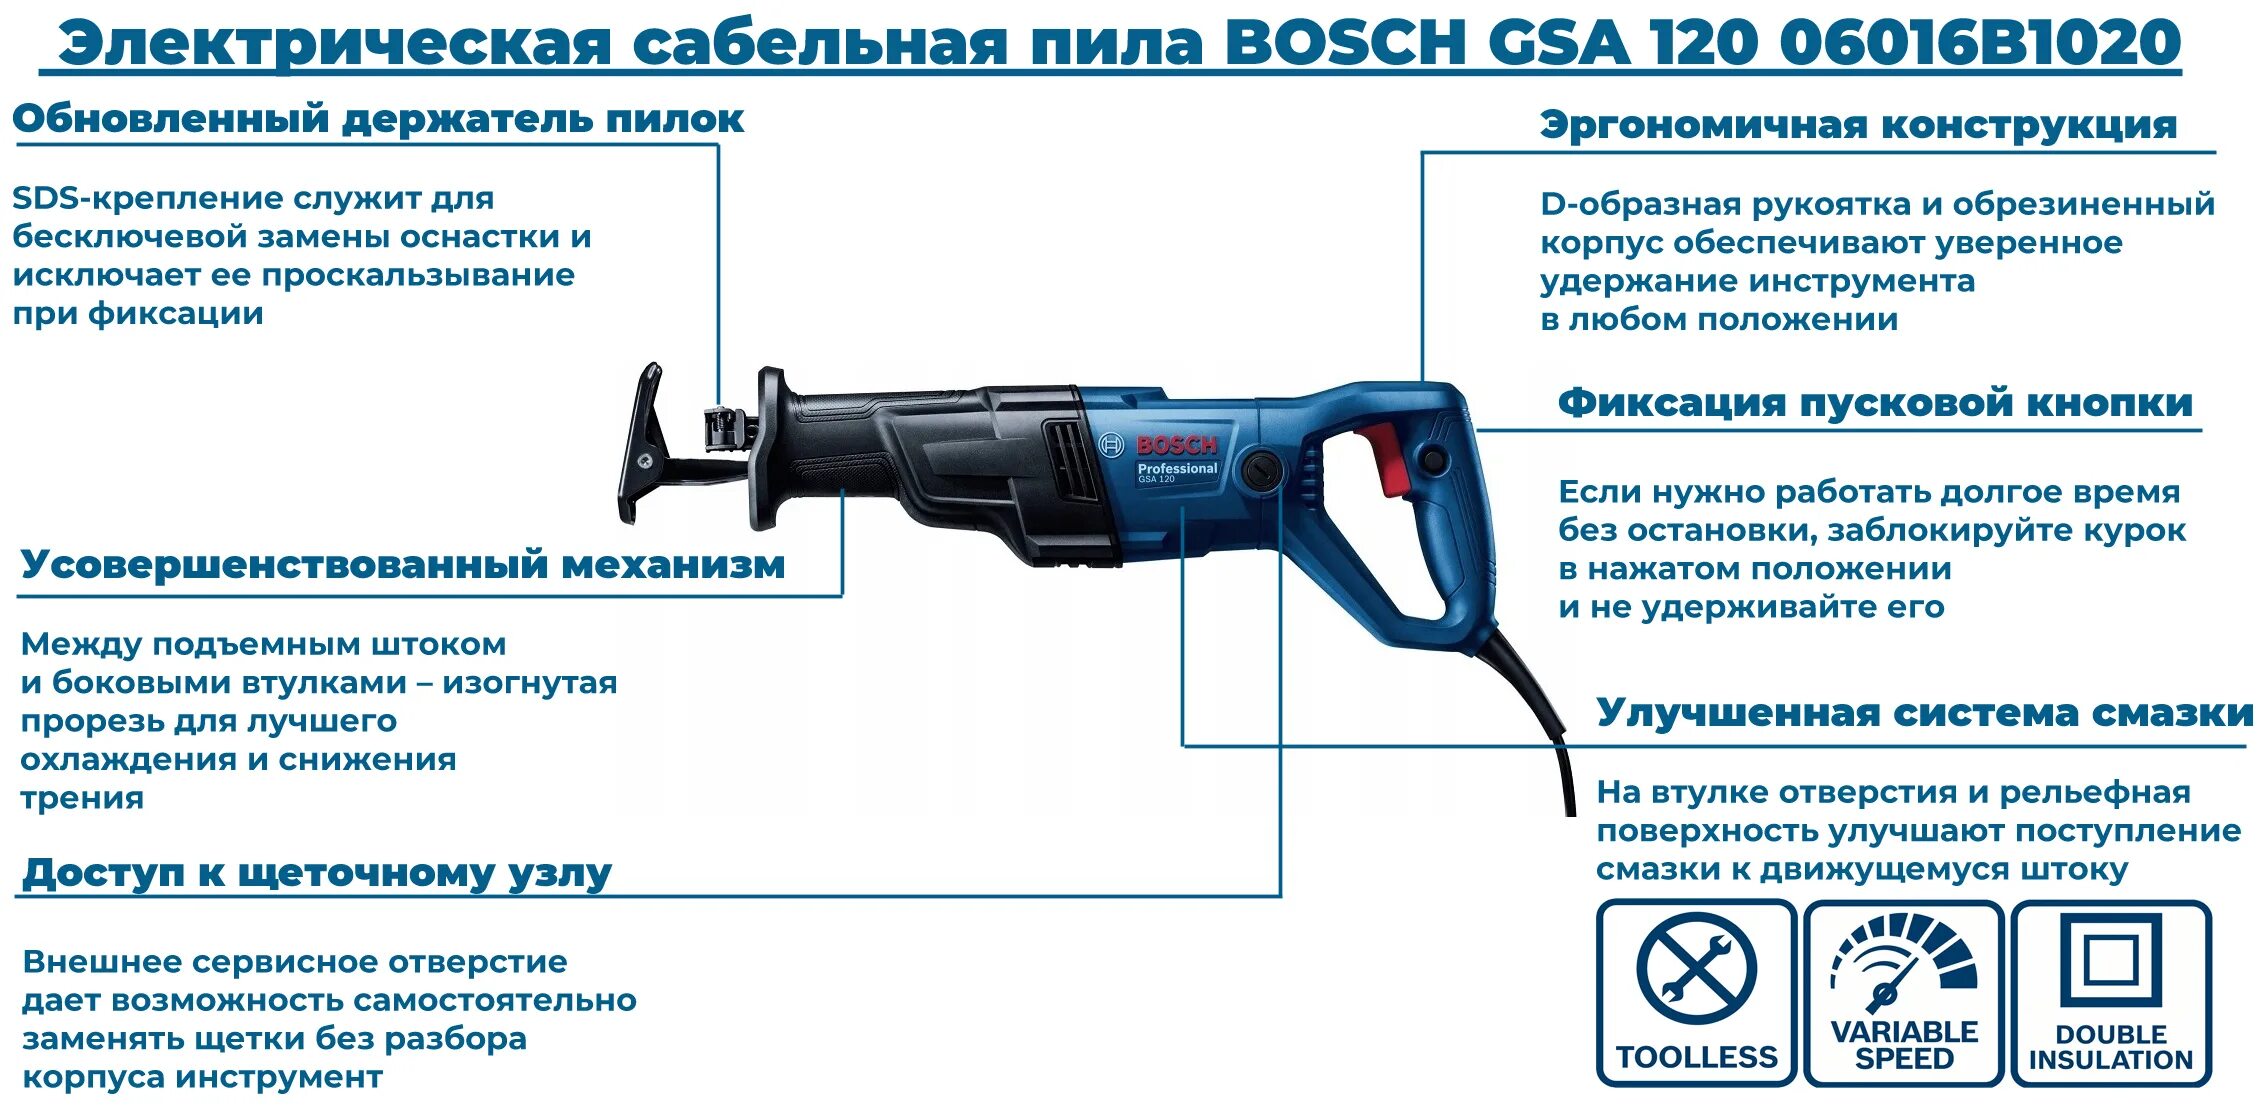 Сабельная пила характеристики. Аккумуляторная сабельная пила Bosch GSA 120. Электро сабельная пила бош. Ротор сабельной пилы Fit 80358. Кейс для Bosch GSA 120.